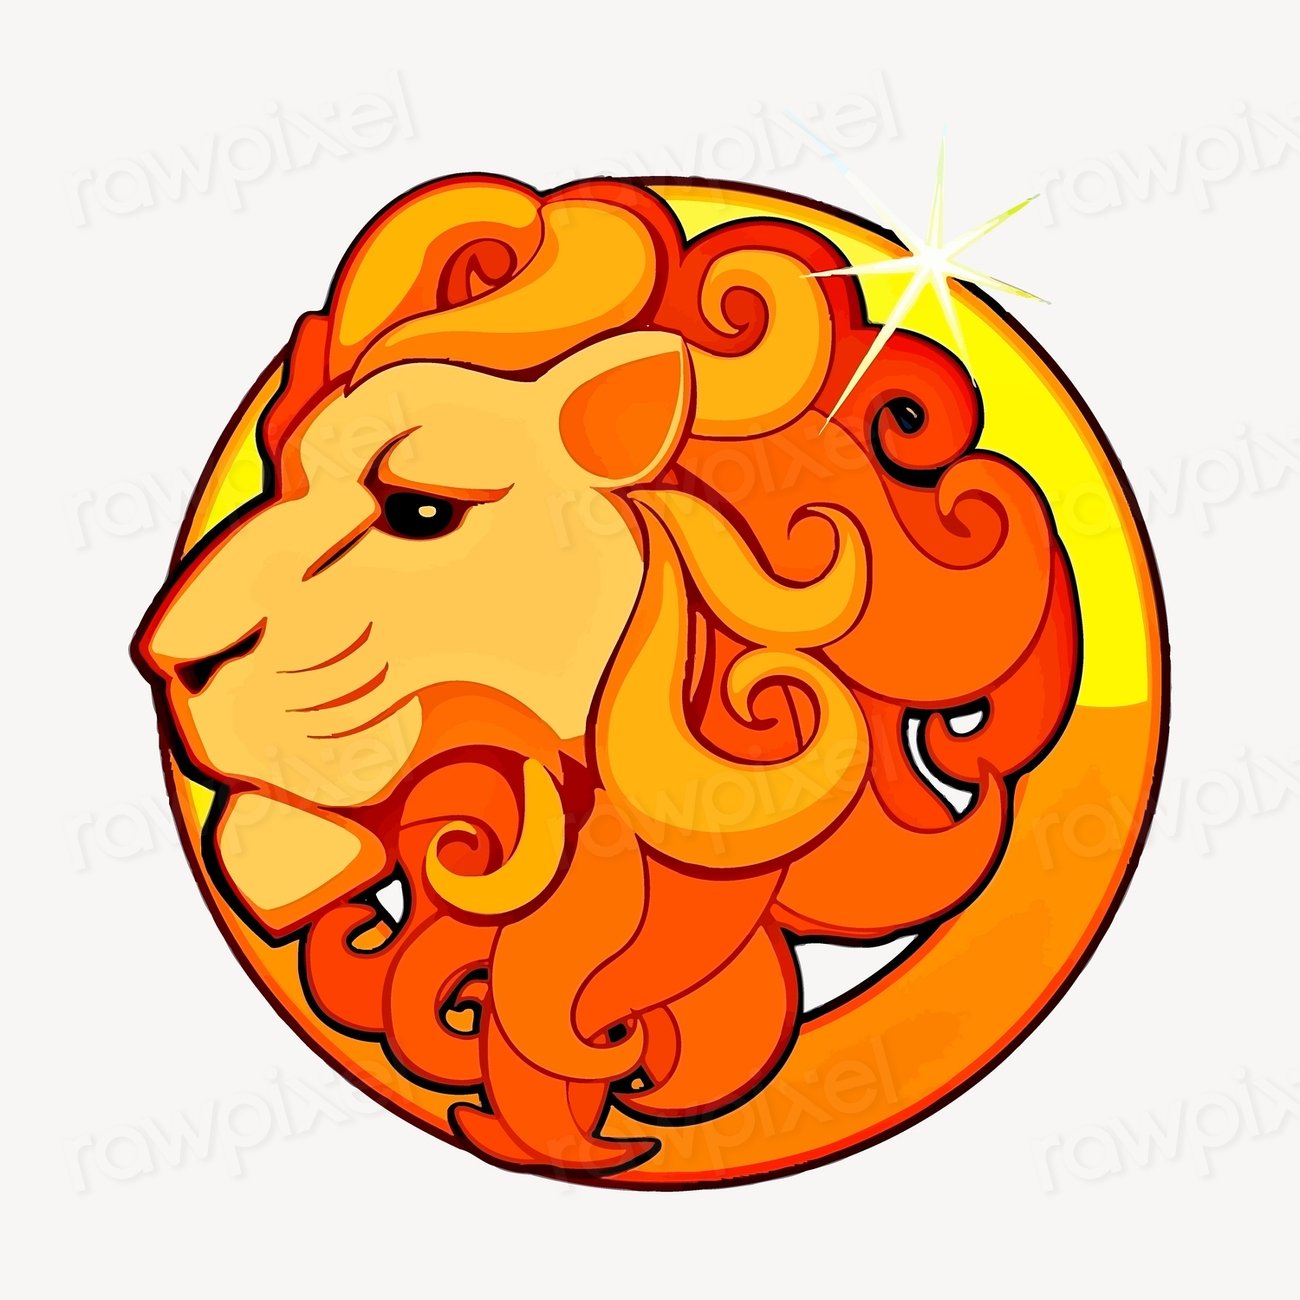 Leo symbol, astrology sign illustration